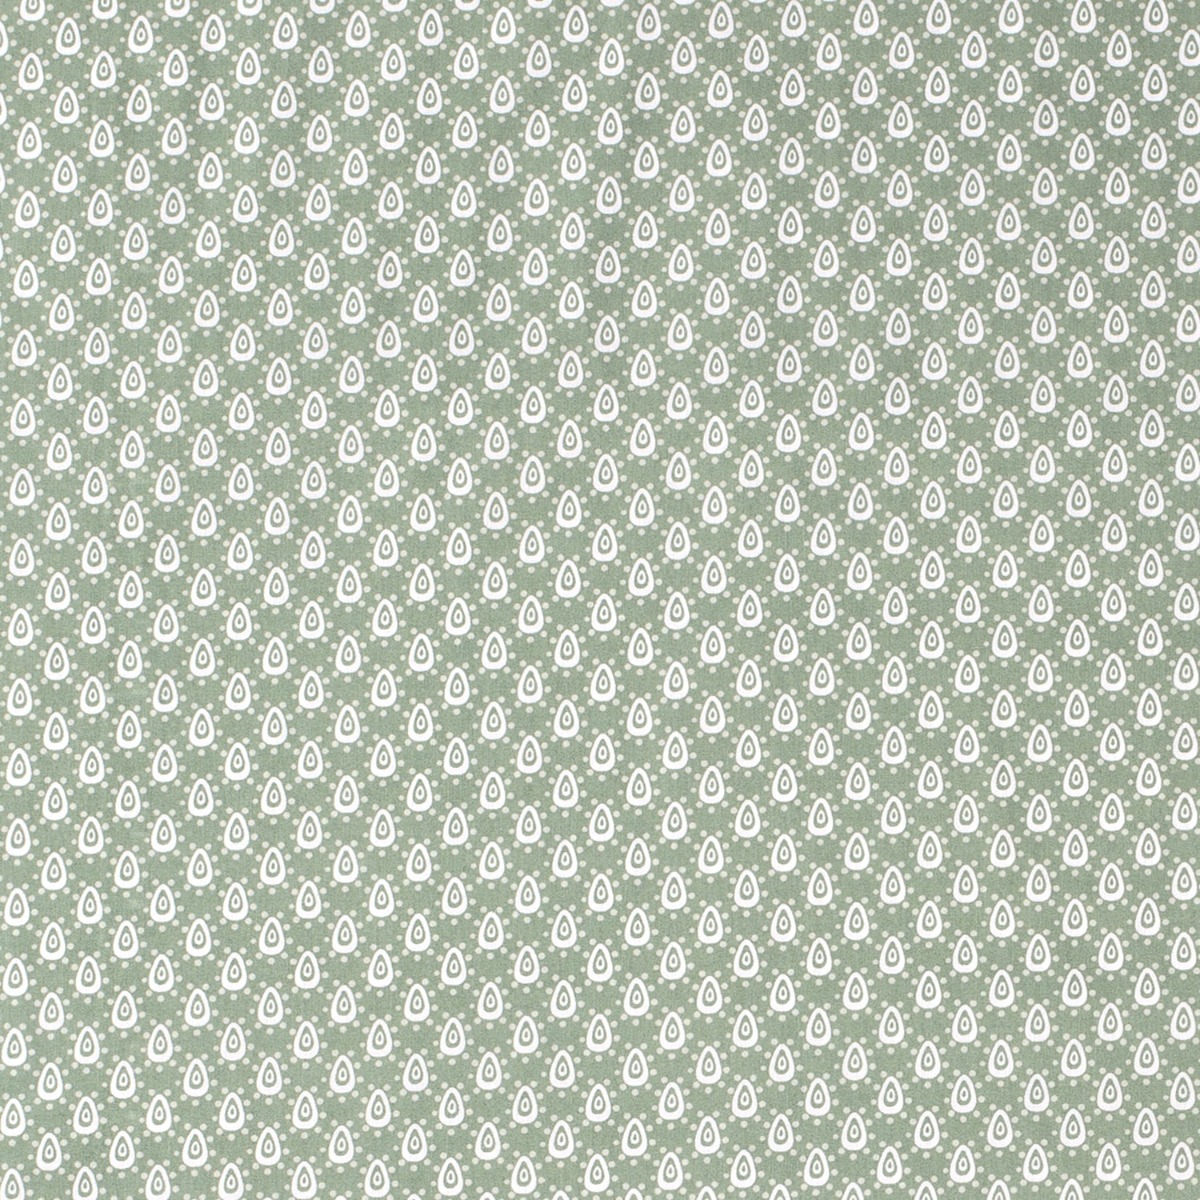 Baumwolle Ovale & Punkte auf Grün